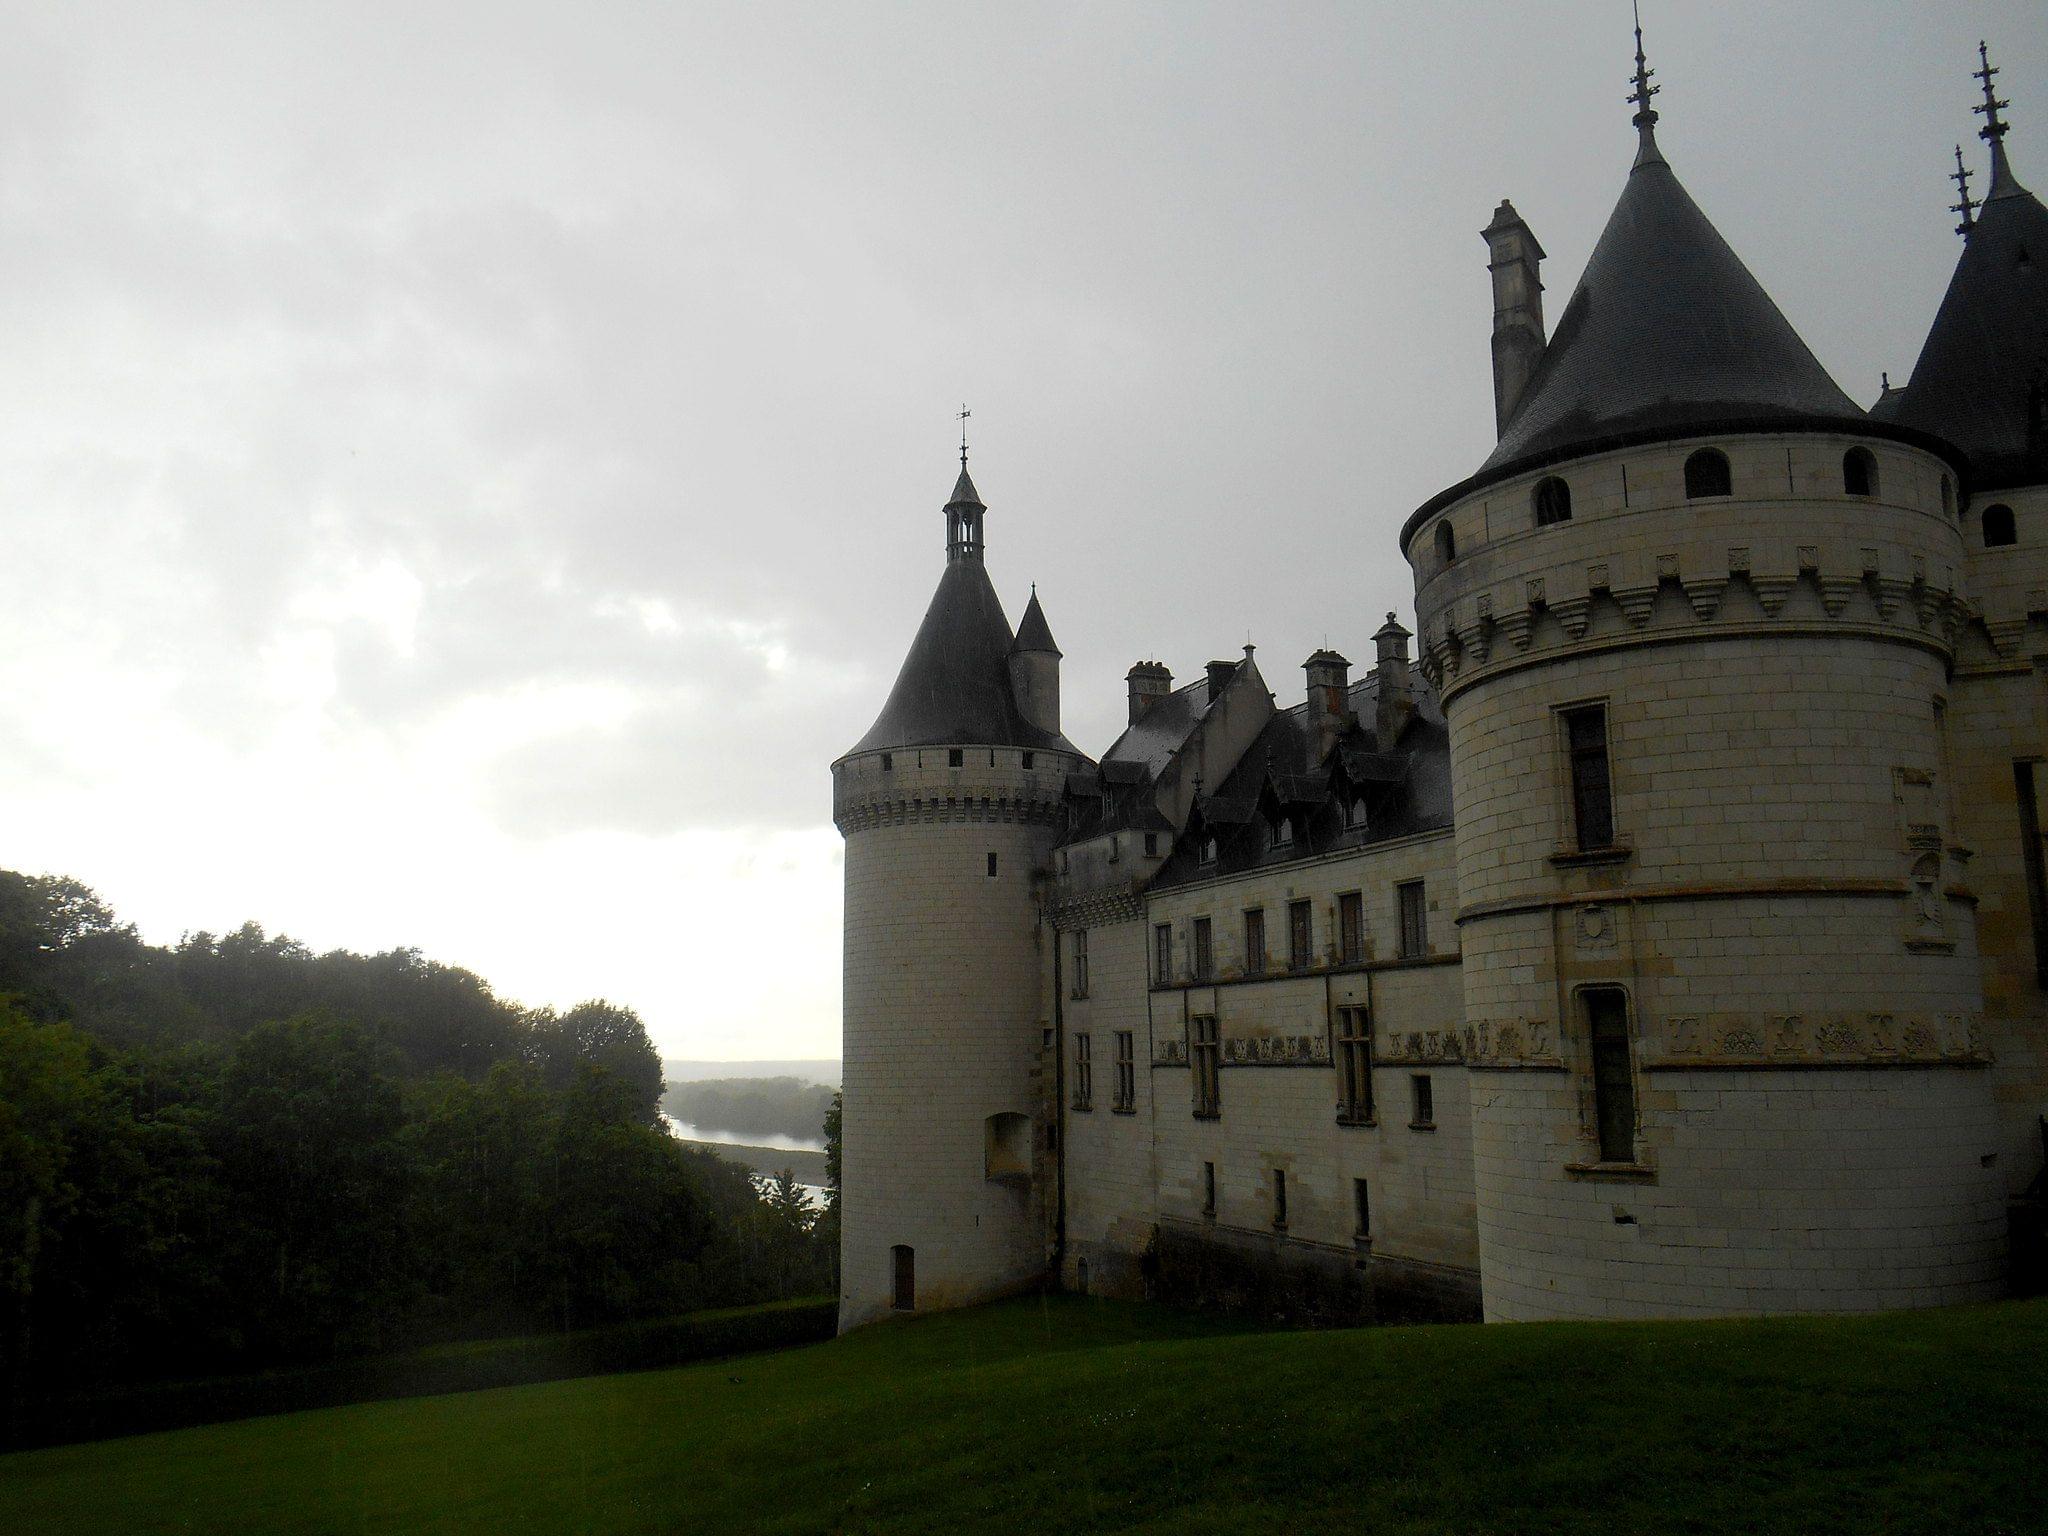 chateau de chaumont